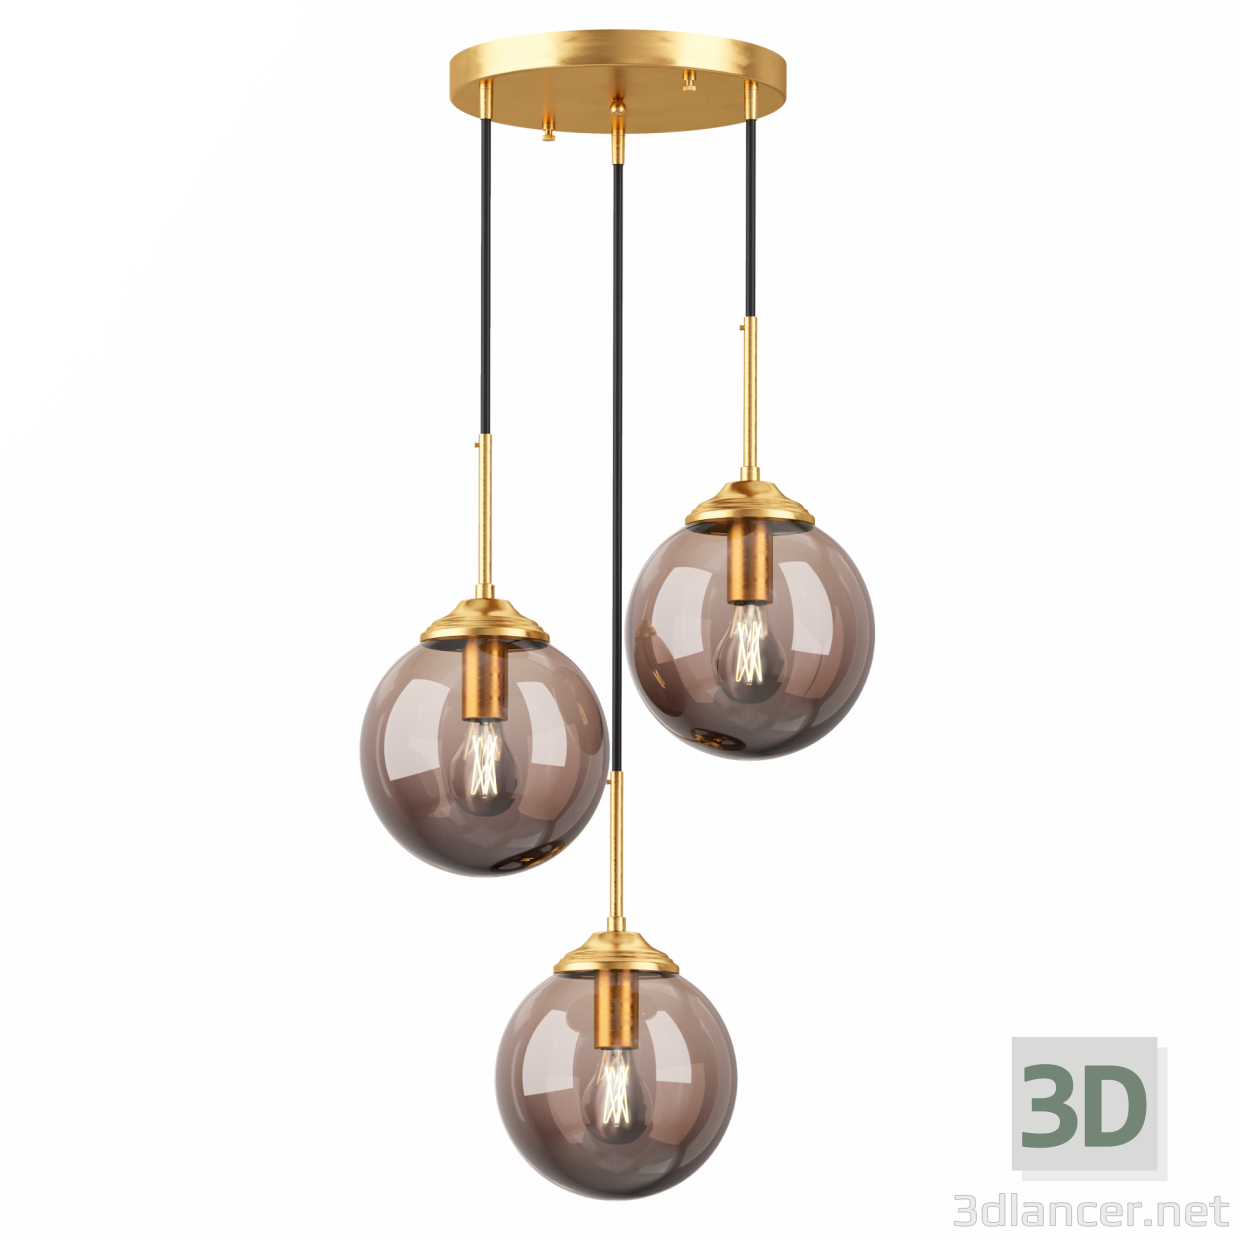 3d 3 Lights Globe Hanging model buy - render